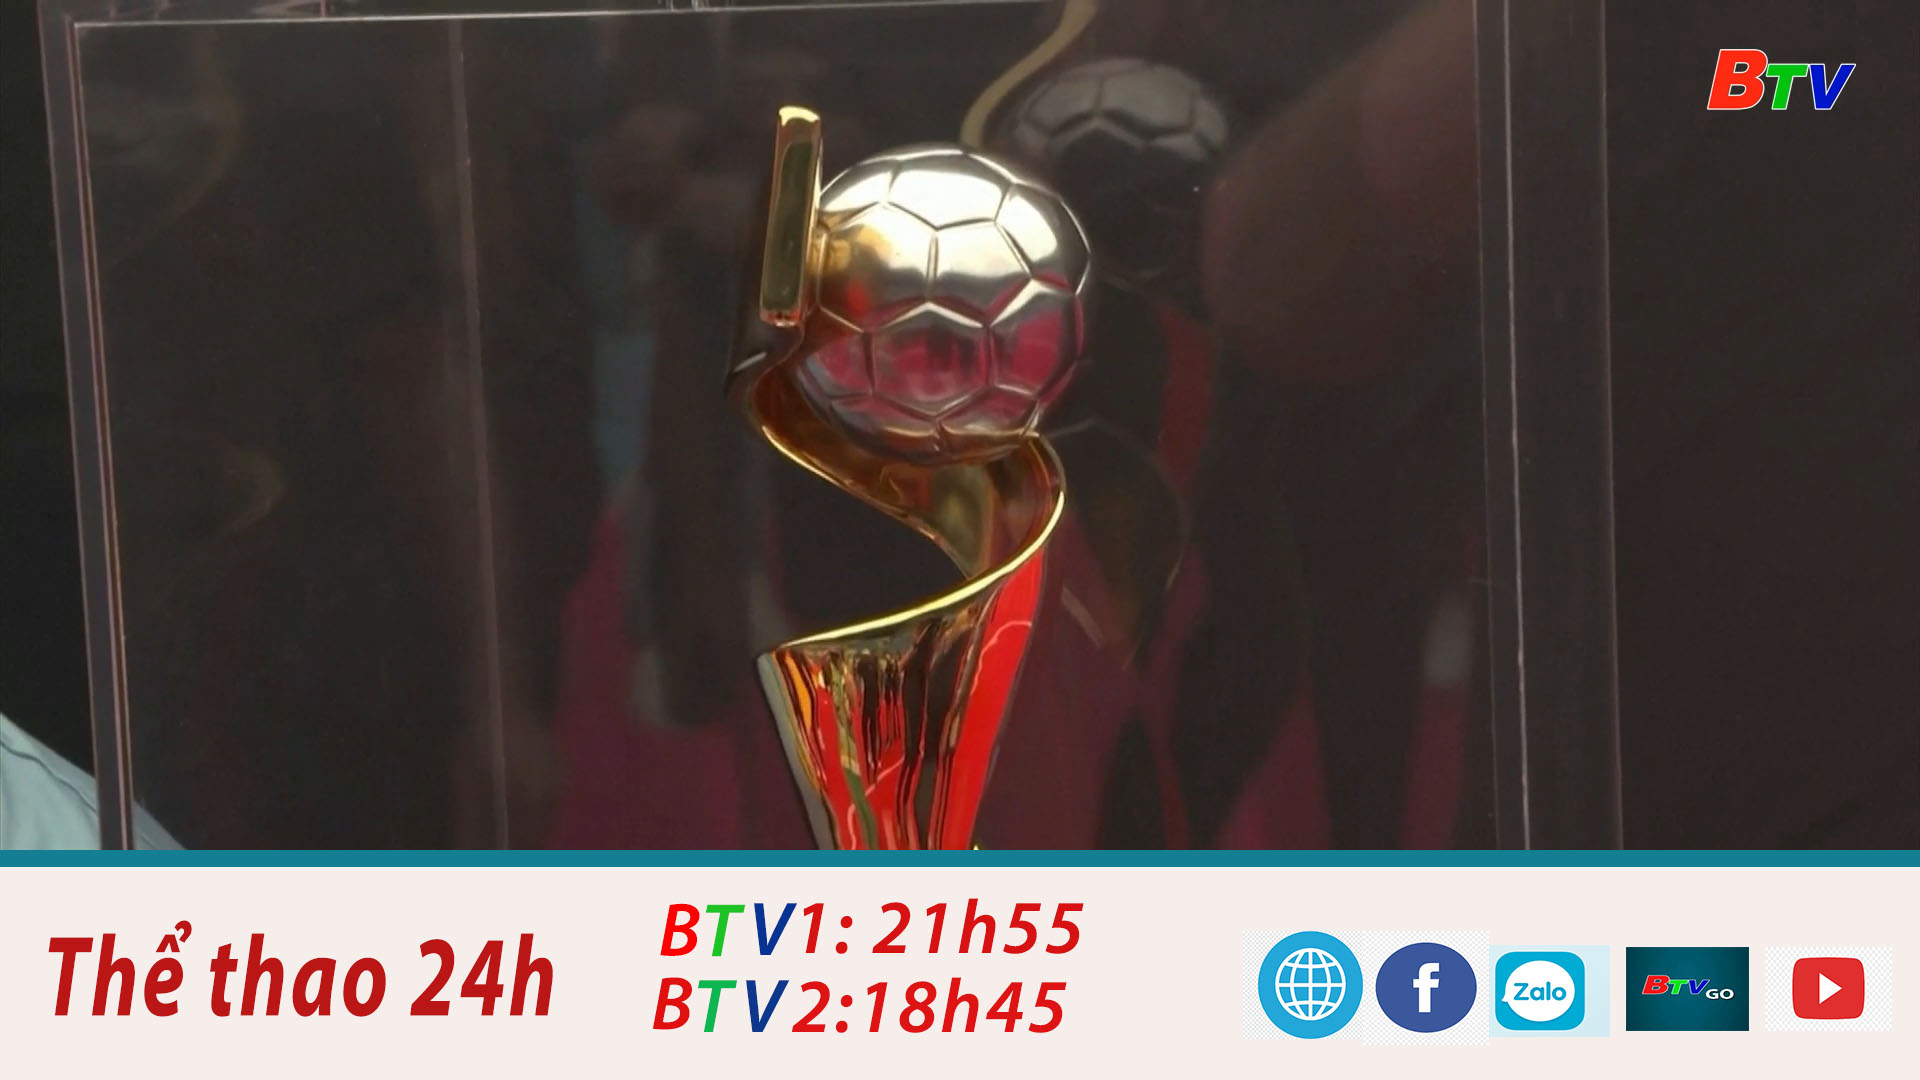 Cúp vàng Fifa World Cup nữ sẽ đến Việt Nam ngày 04/03/2023